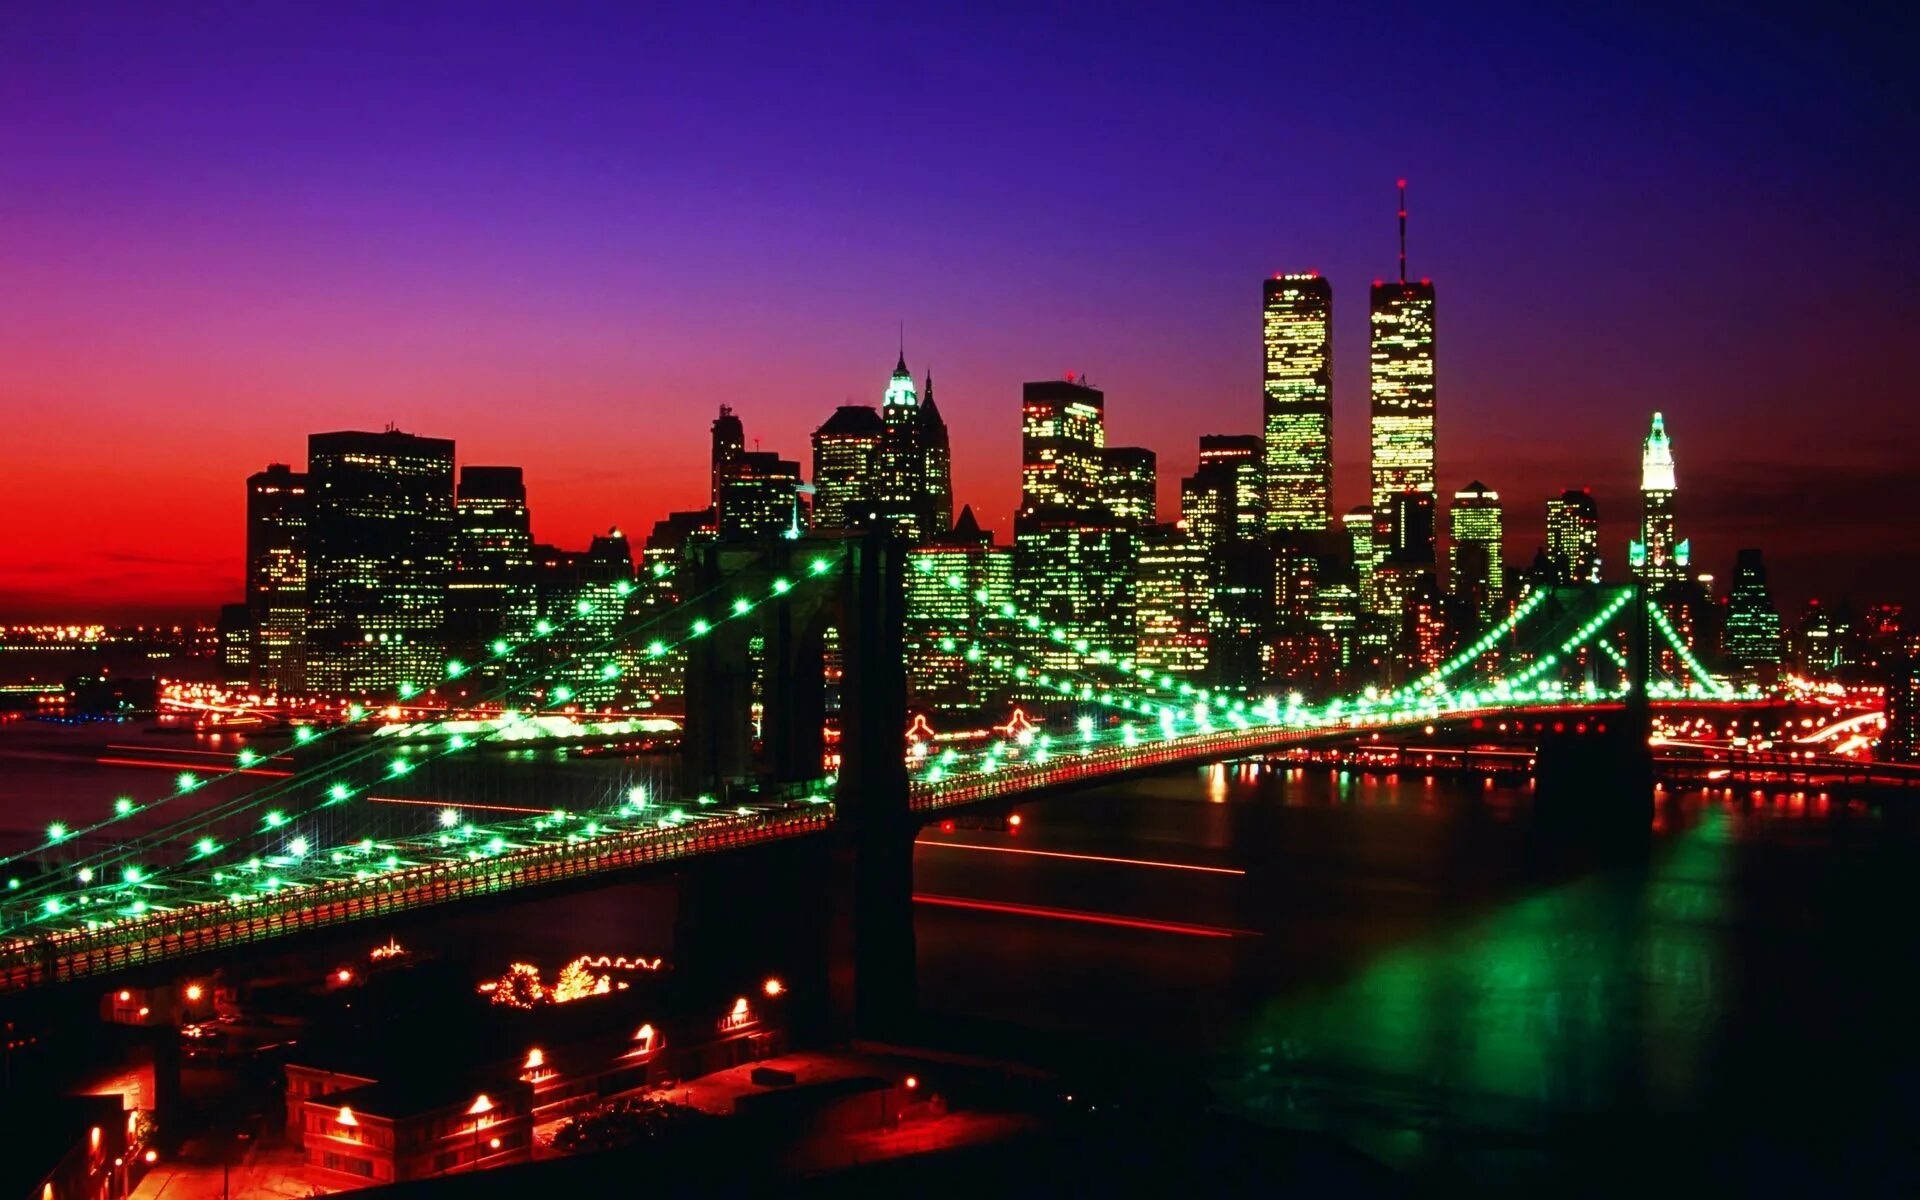 Бруклинский мост Нью-Йорк. Ночной Нью Йорк. Нью-Йорк Манхэттен ночью. Ночной Нью-Йорк Бруклинский мост. Красивые фотки городов